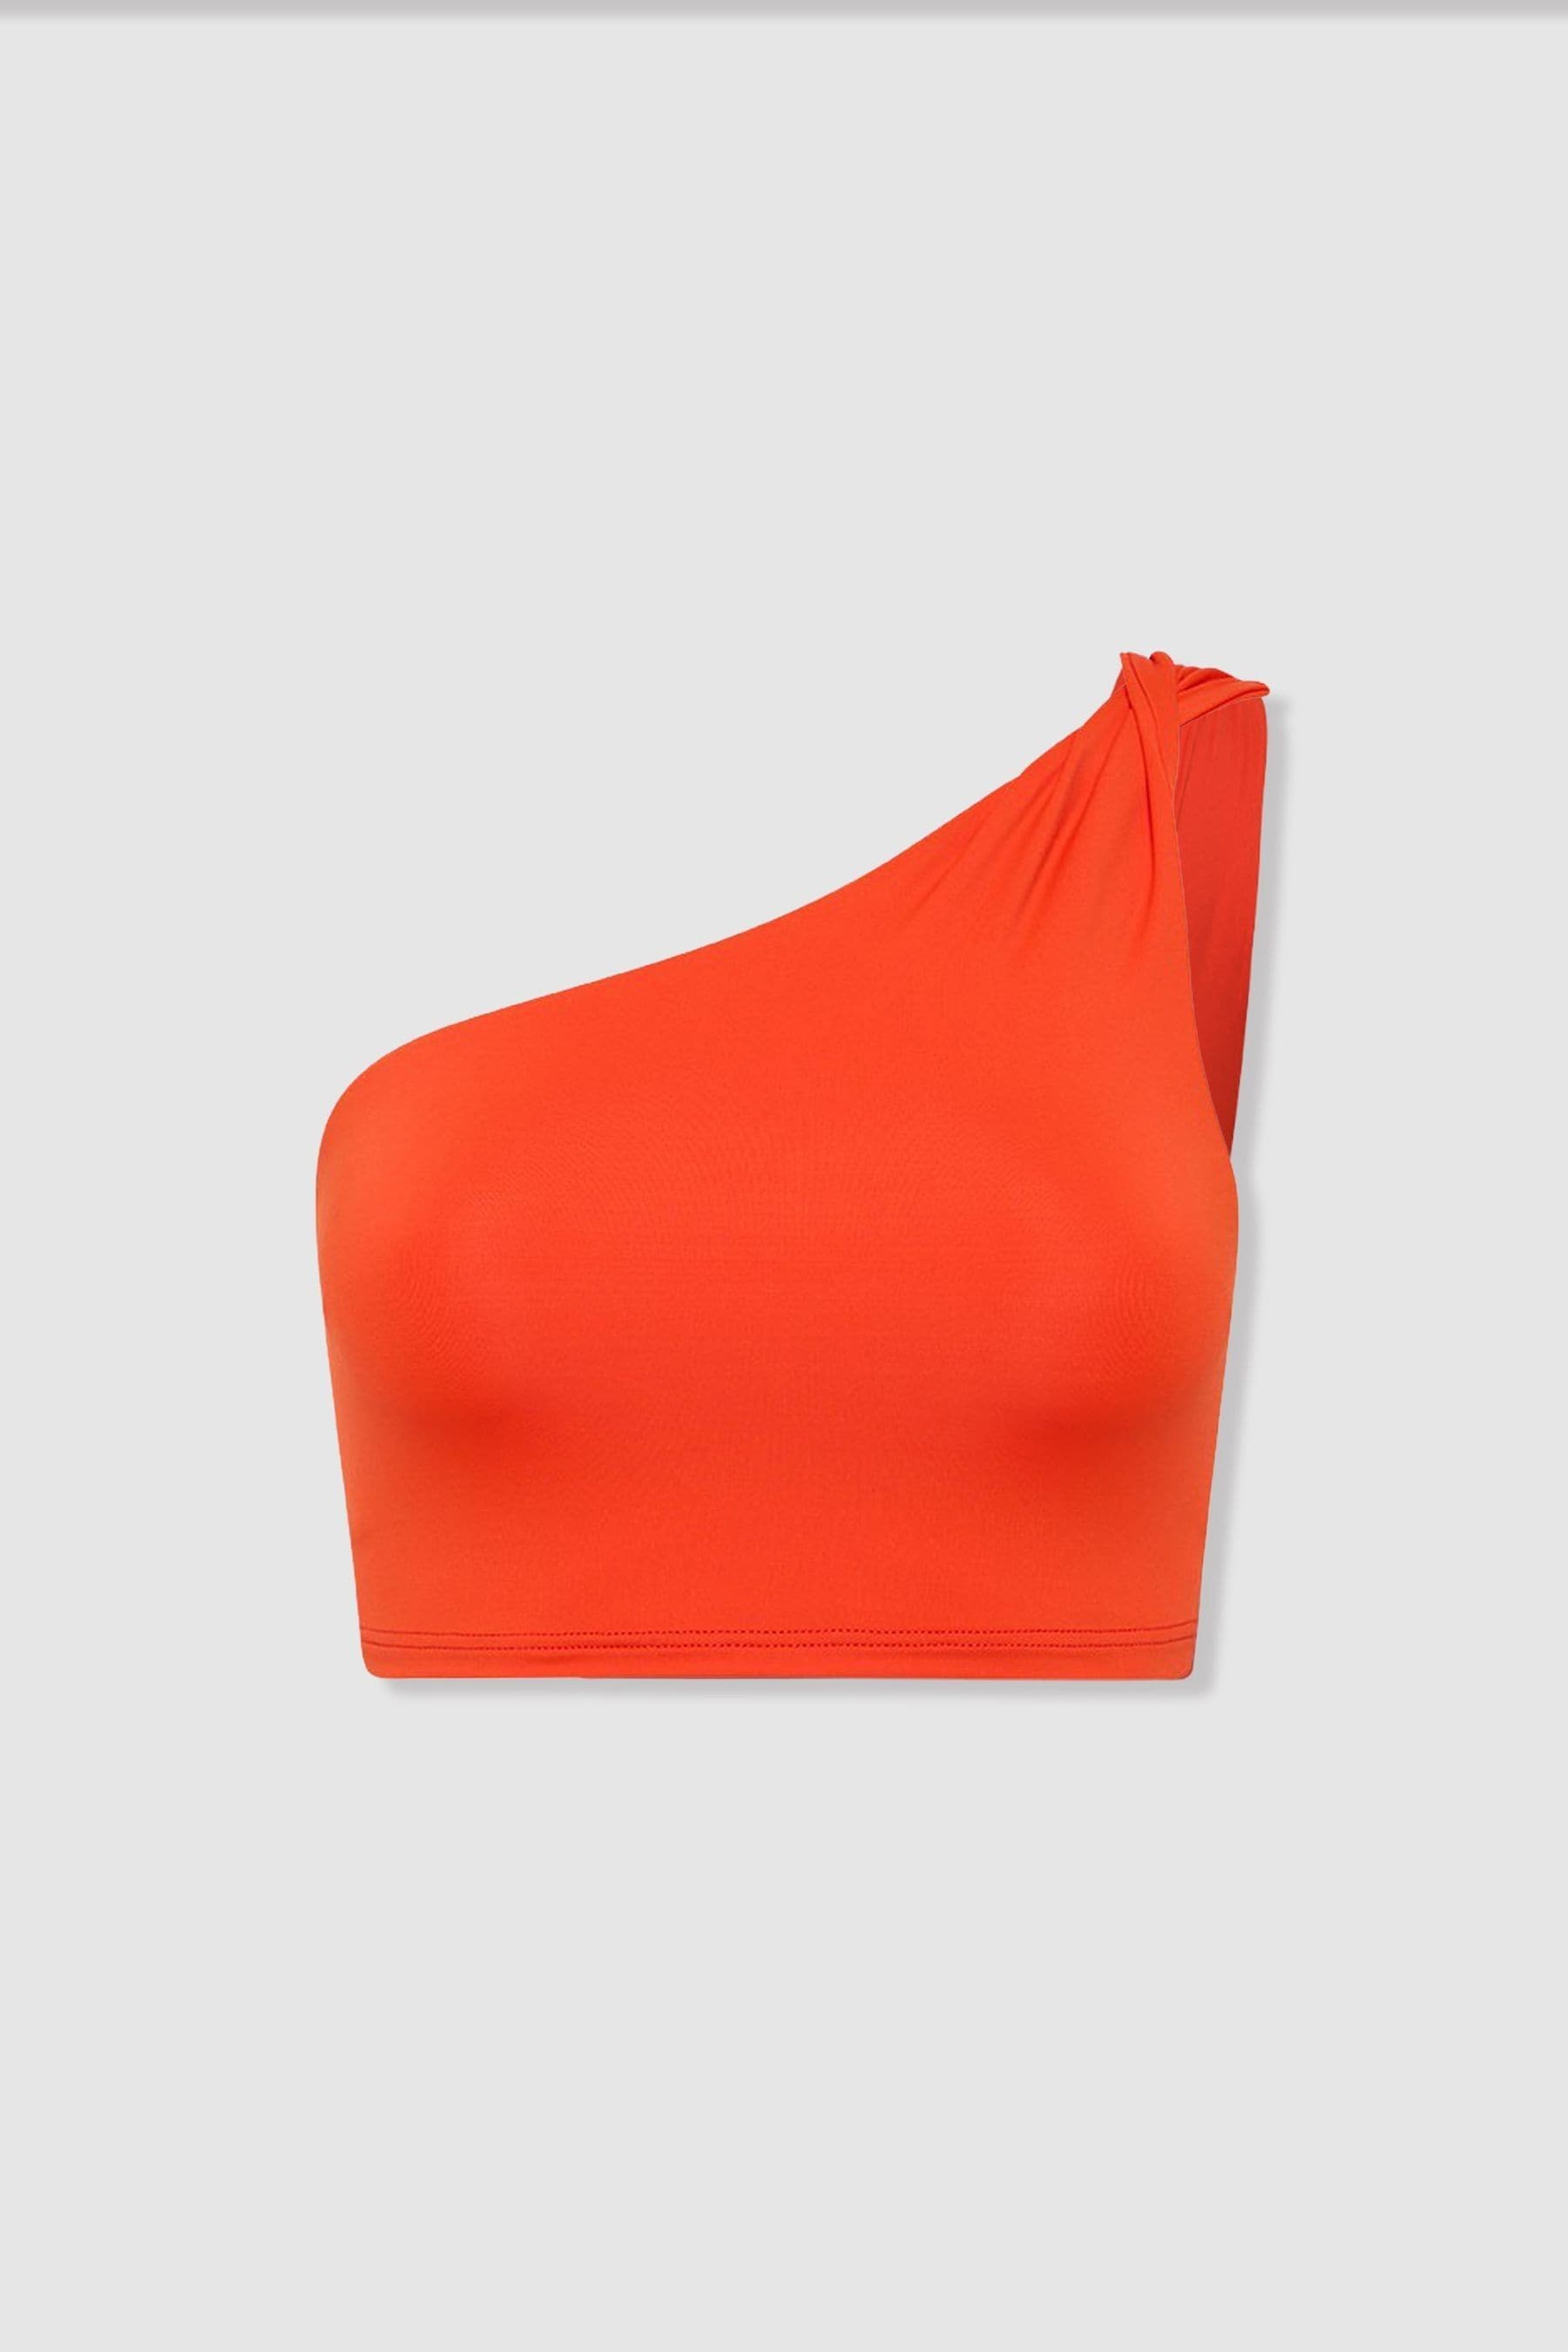 Bondi Born Cori One-shoulder Bikini Top In Hot Orange